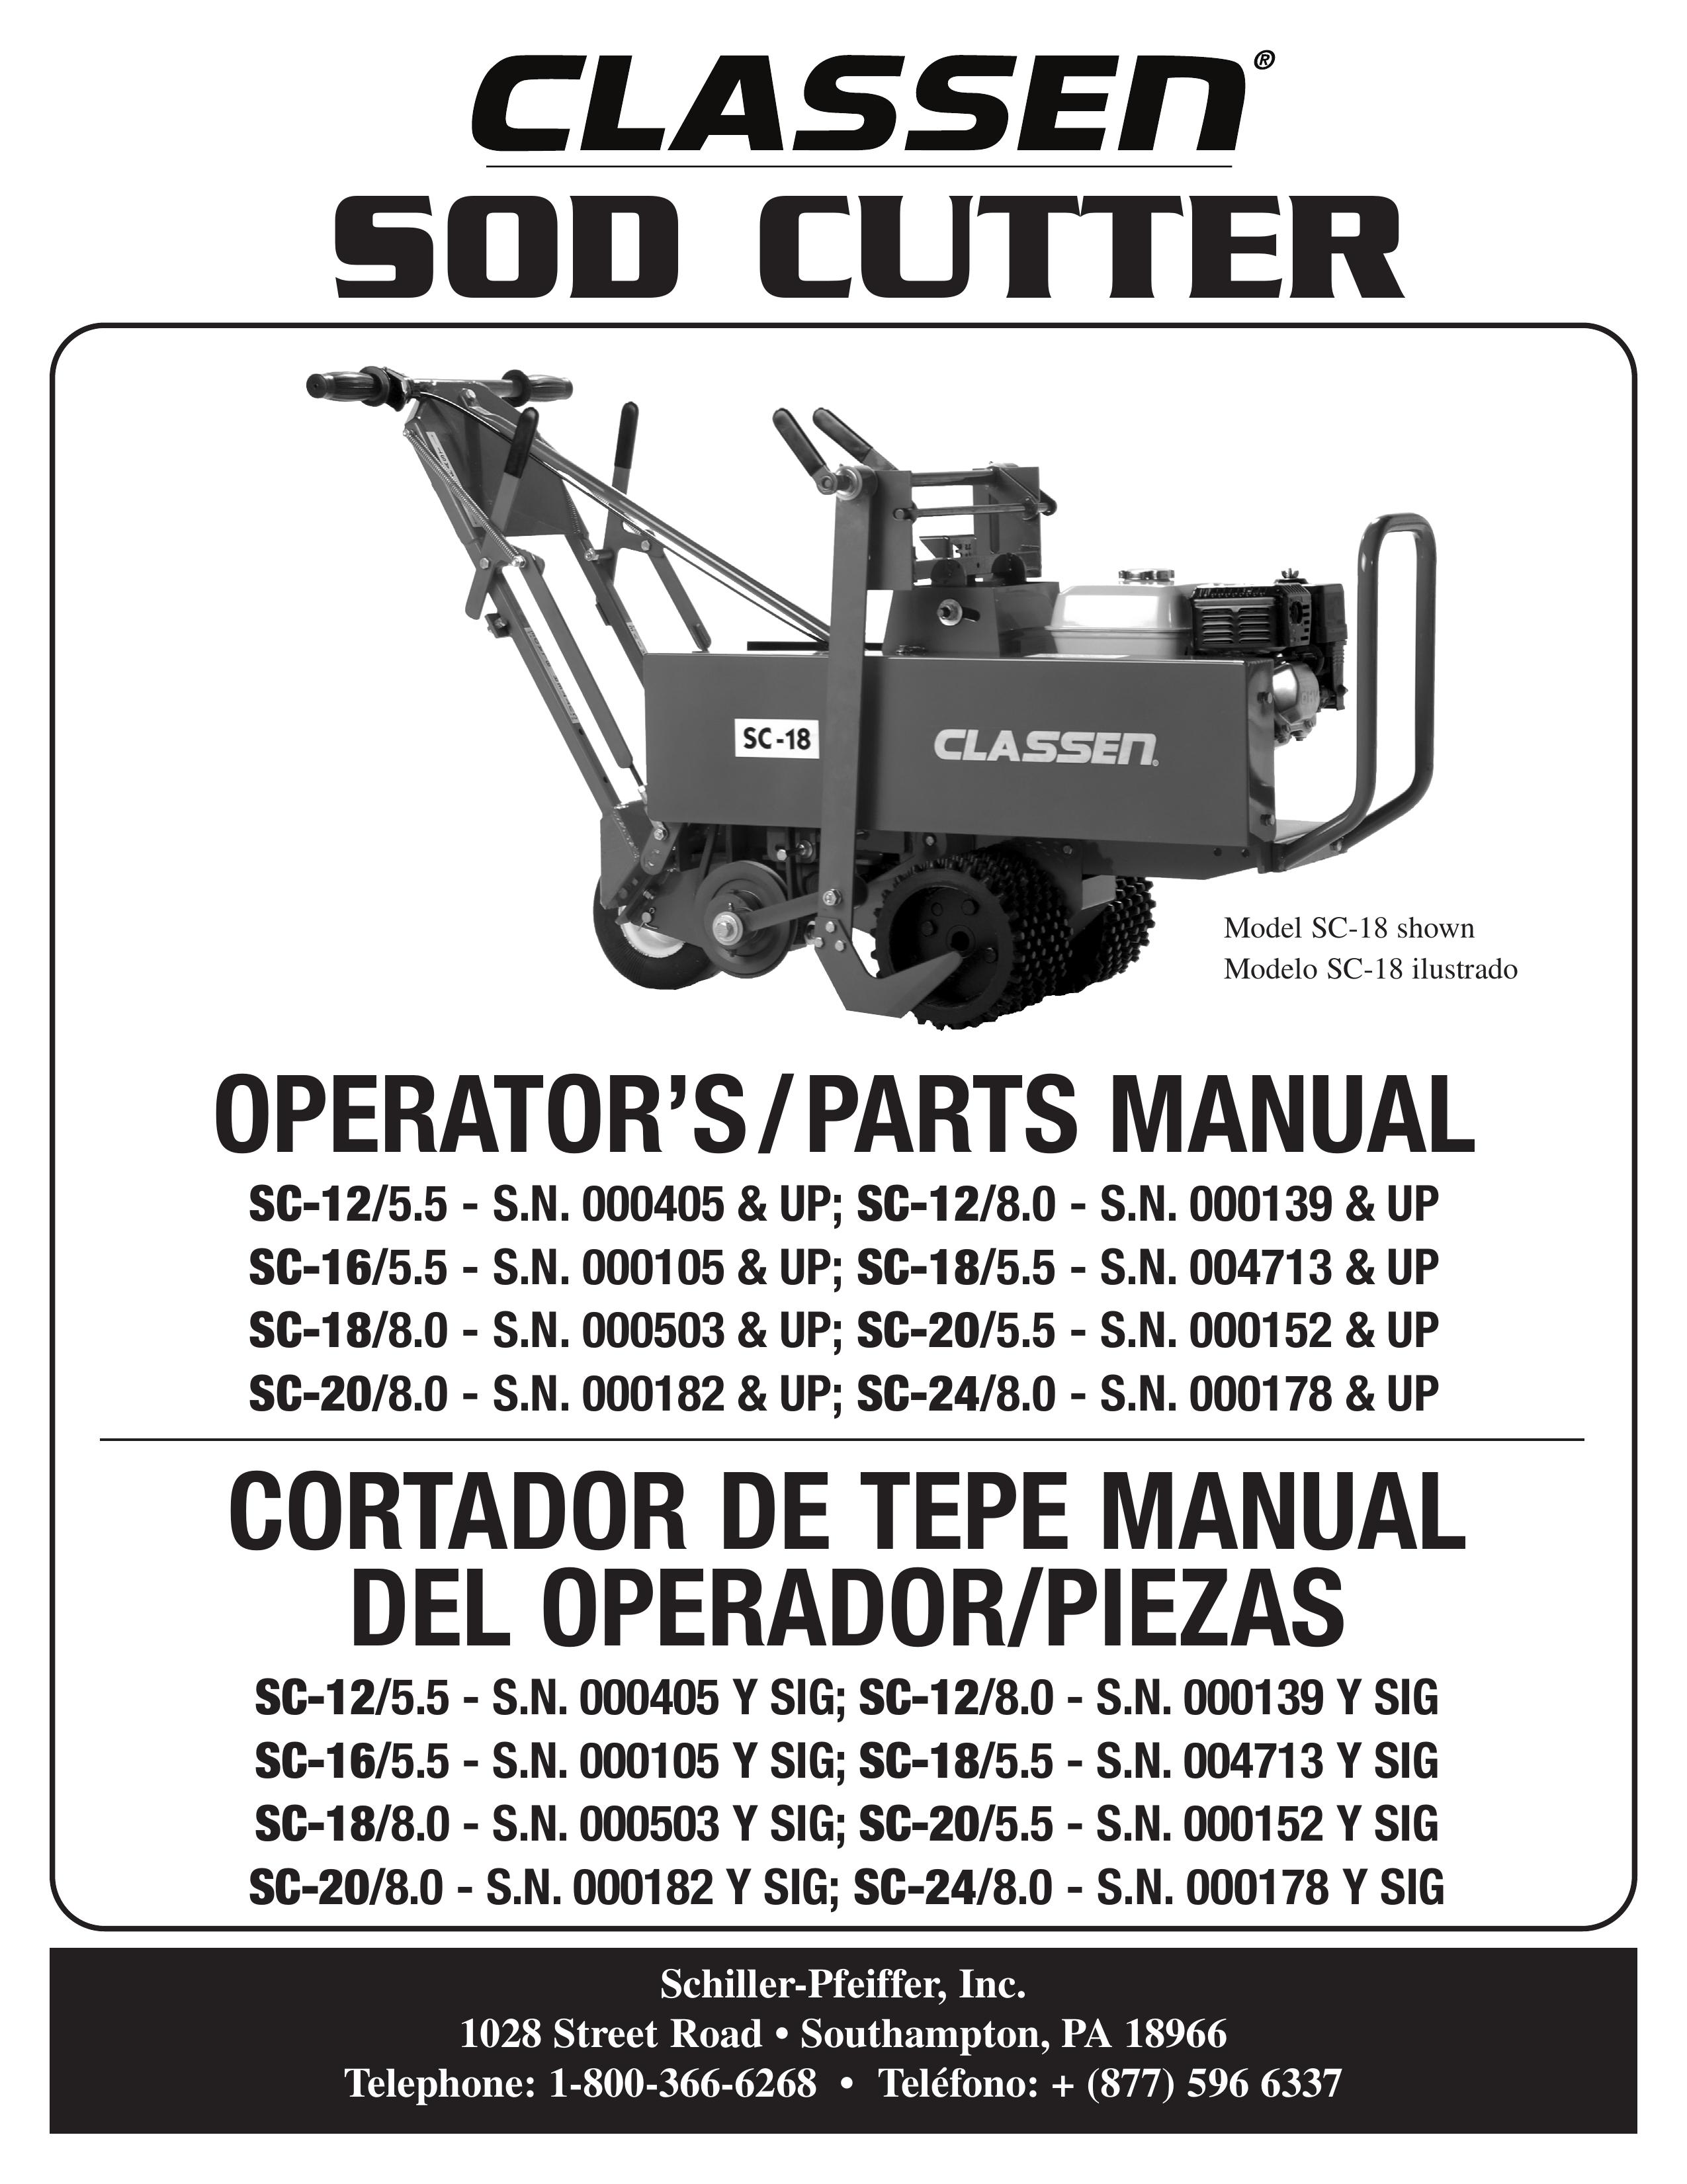 Classen SC-12/8.0 Brush Cutter User Manual